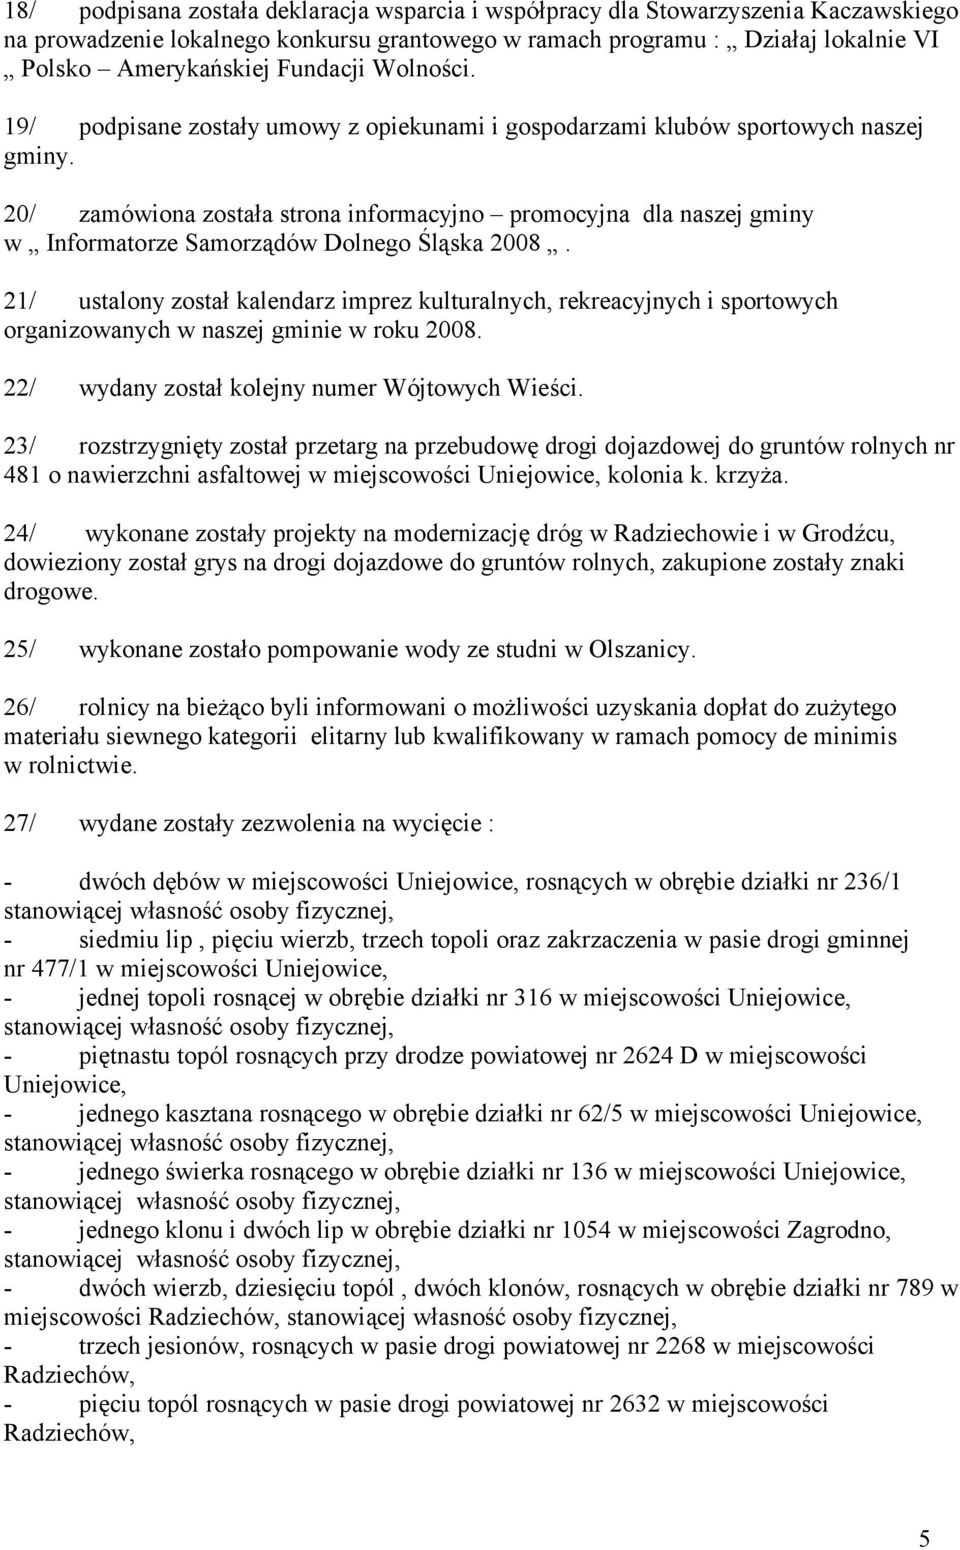 20/ zamówiona została strona informacyjno promocyjna dla naszej gminy w Informatorze Samorządów Dolnego Śląska 2008.